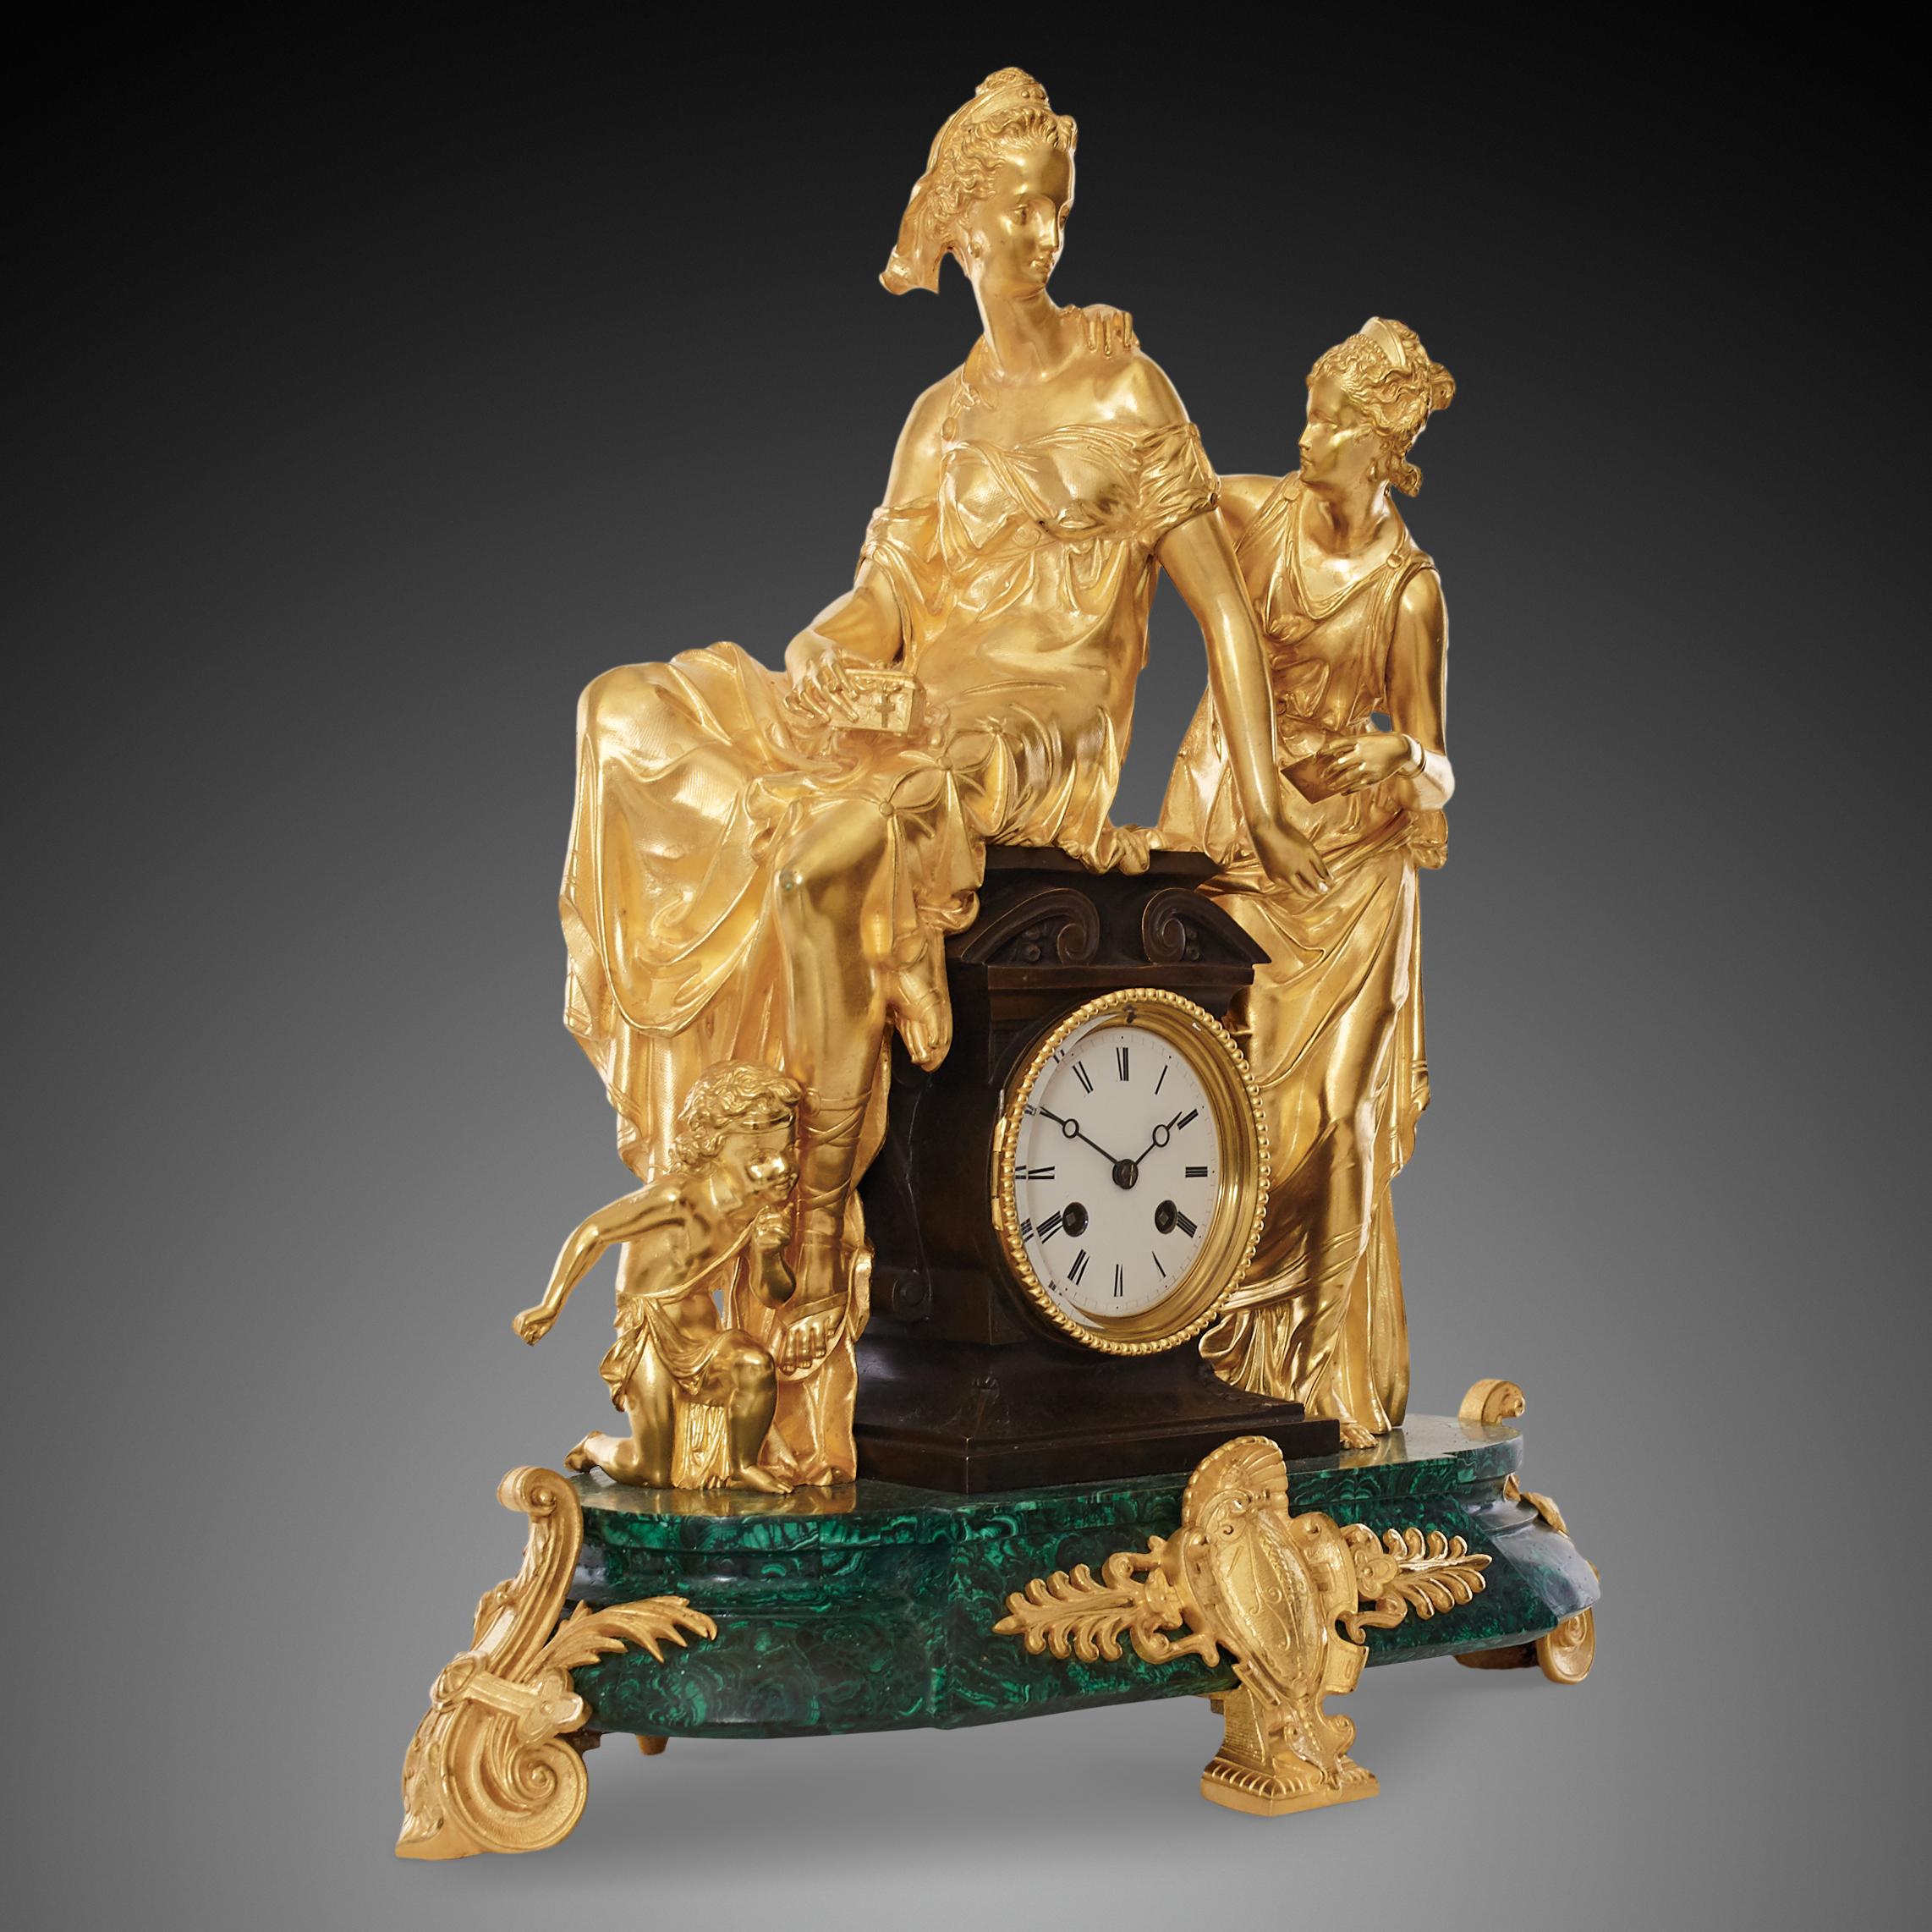 Uhr im neoklassizistischen Stil des späten 19. Jahrhunderts aus vergoldeter Bronze mit einem Gehäuse aus Malachit und einem Sockel aus türkisfarbenem Malachit und goldenem Ormolu, der von den damals üblichen Tupie-Füßen getragen wird. Malachit ist